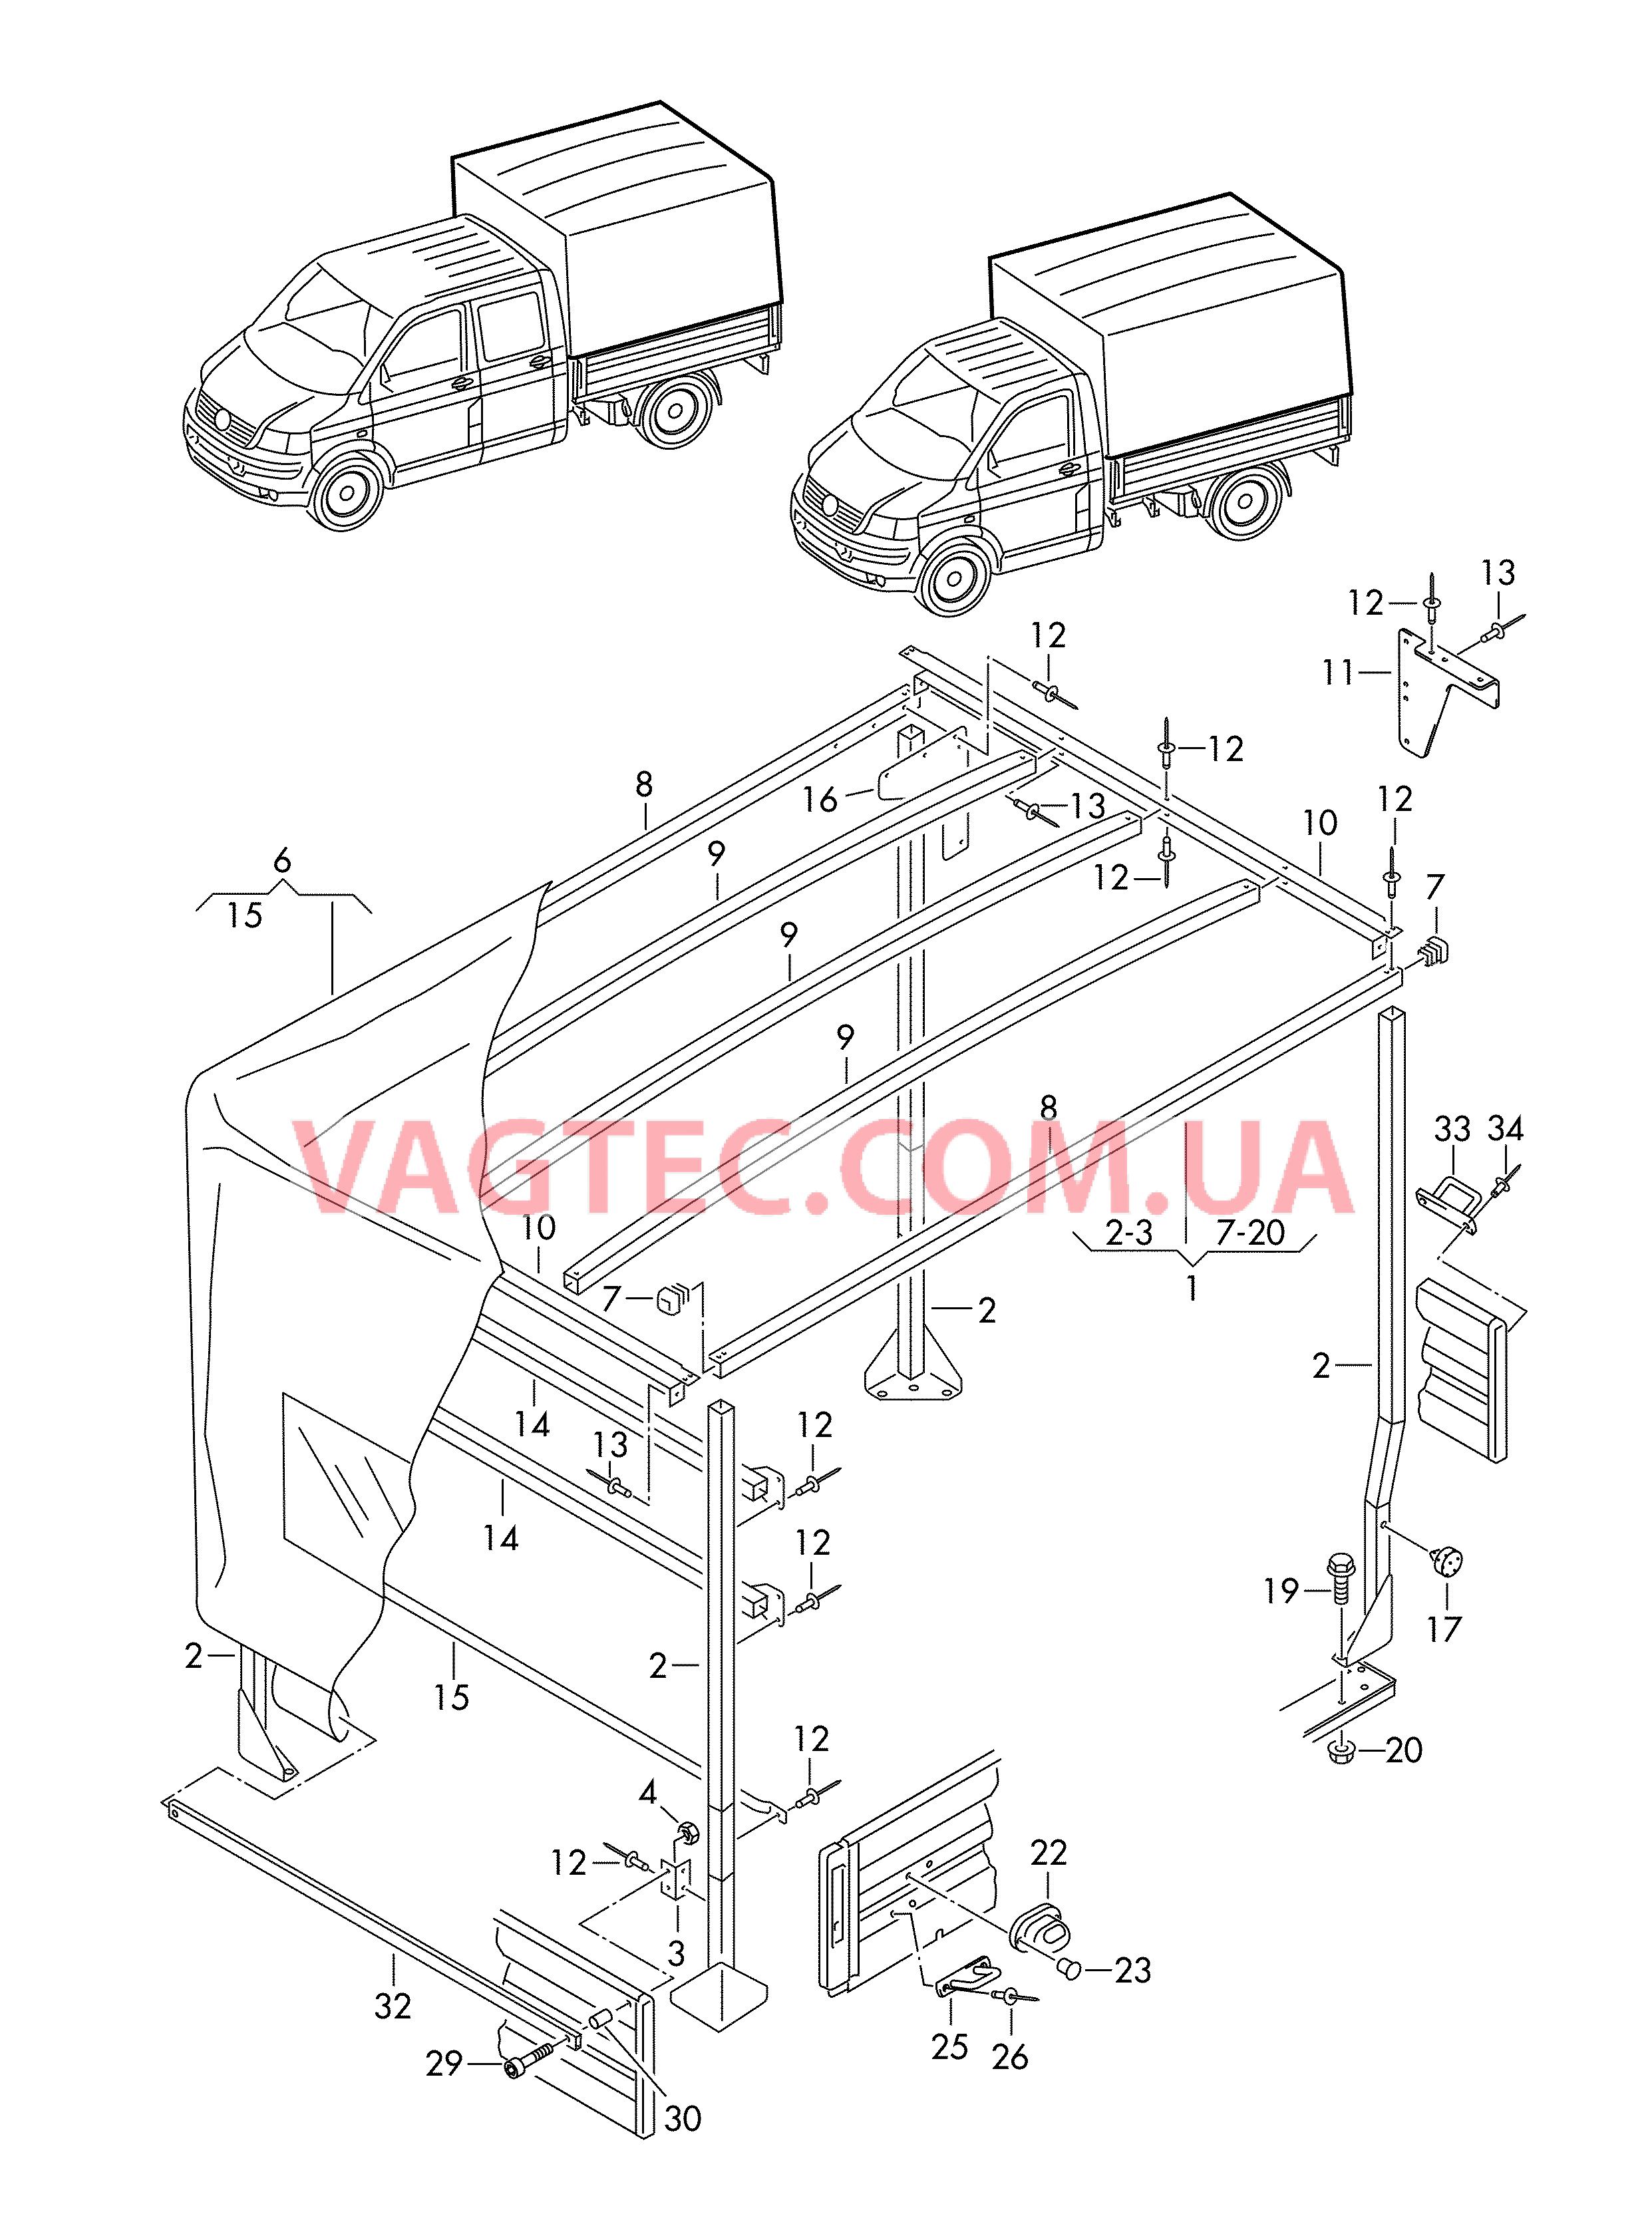 Каркас складной крыши с тентом и деталями крепления  для VOLKSWAGEN Transporter 2003-2